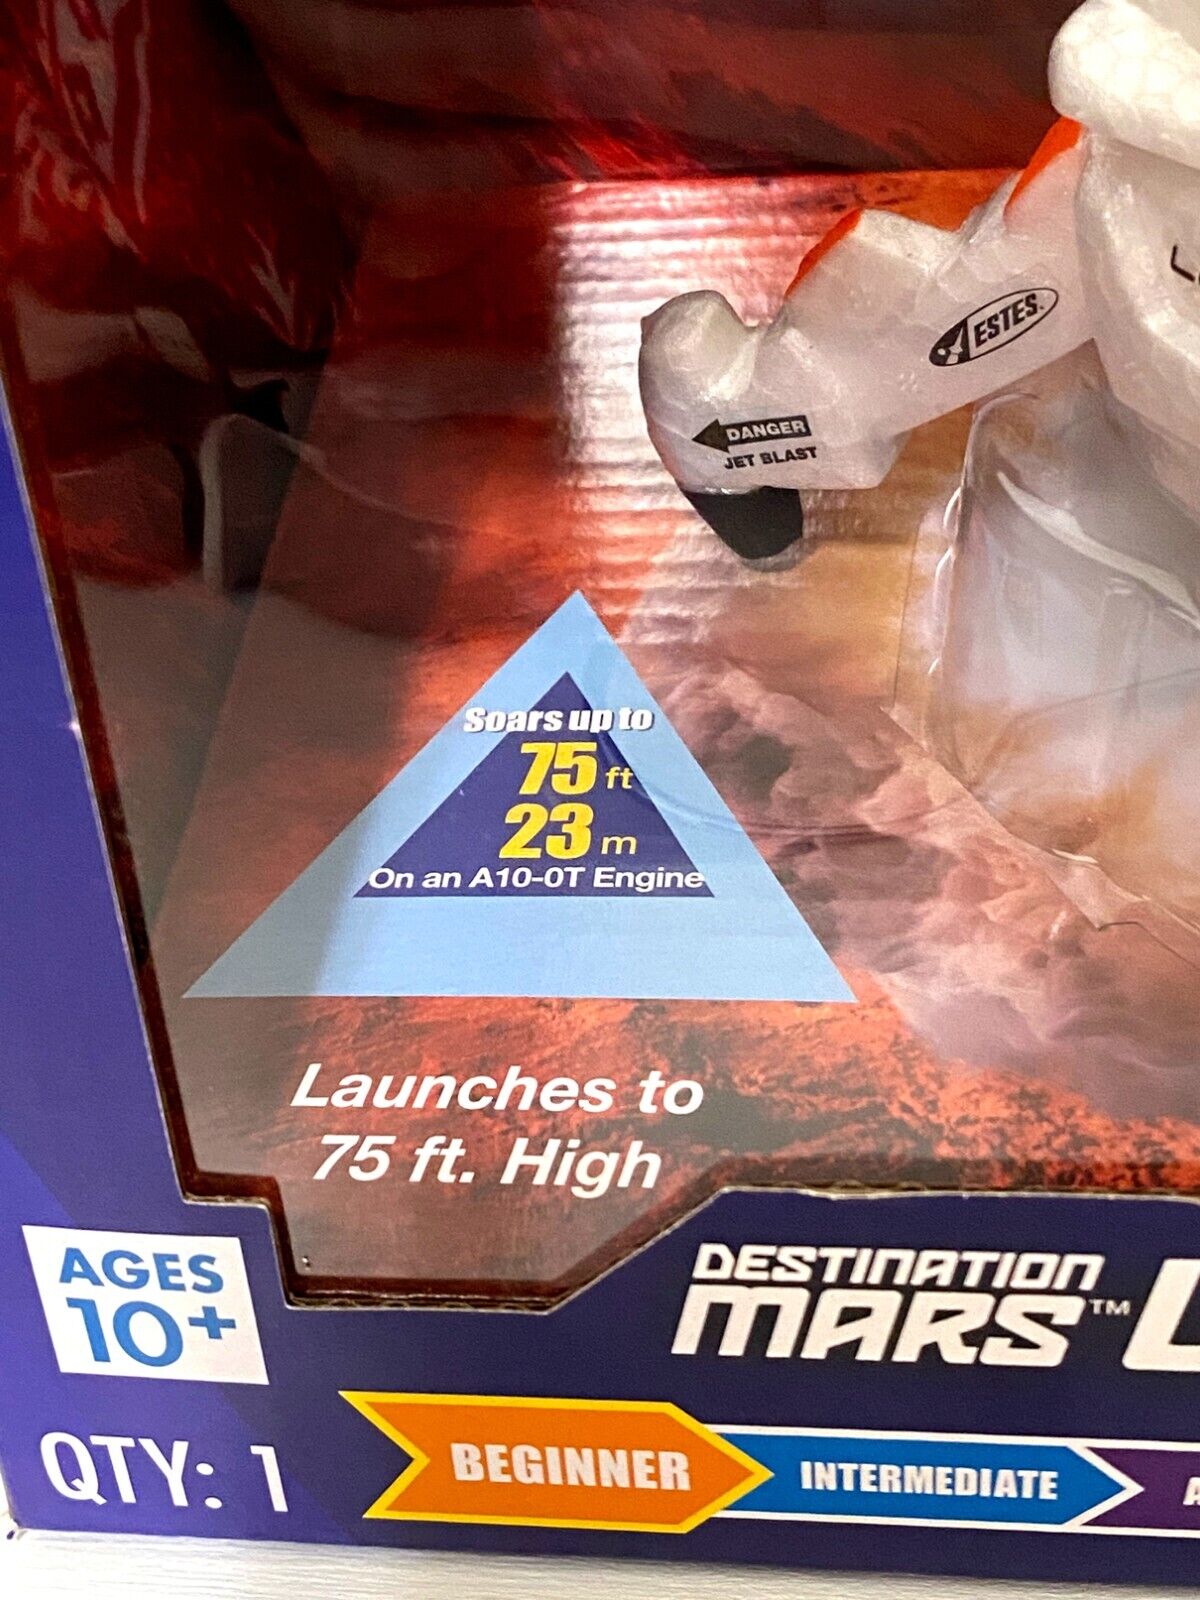 Estes Mars Leaper Rocket Kit - Beginner Level